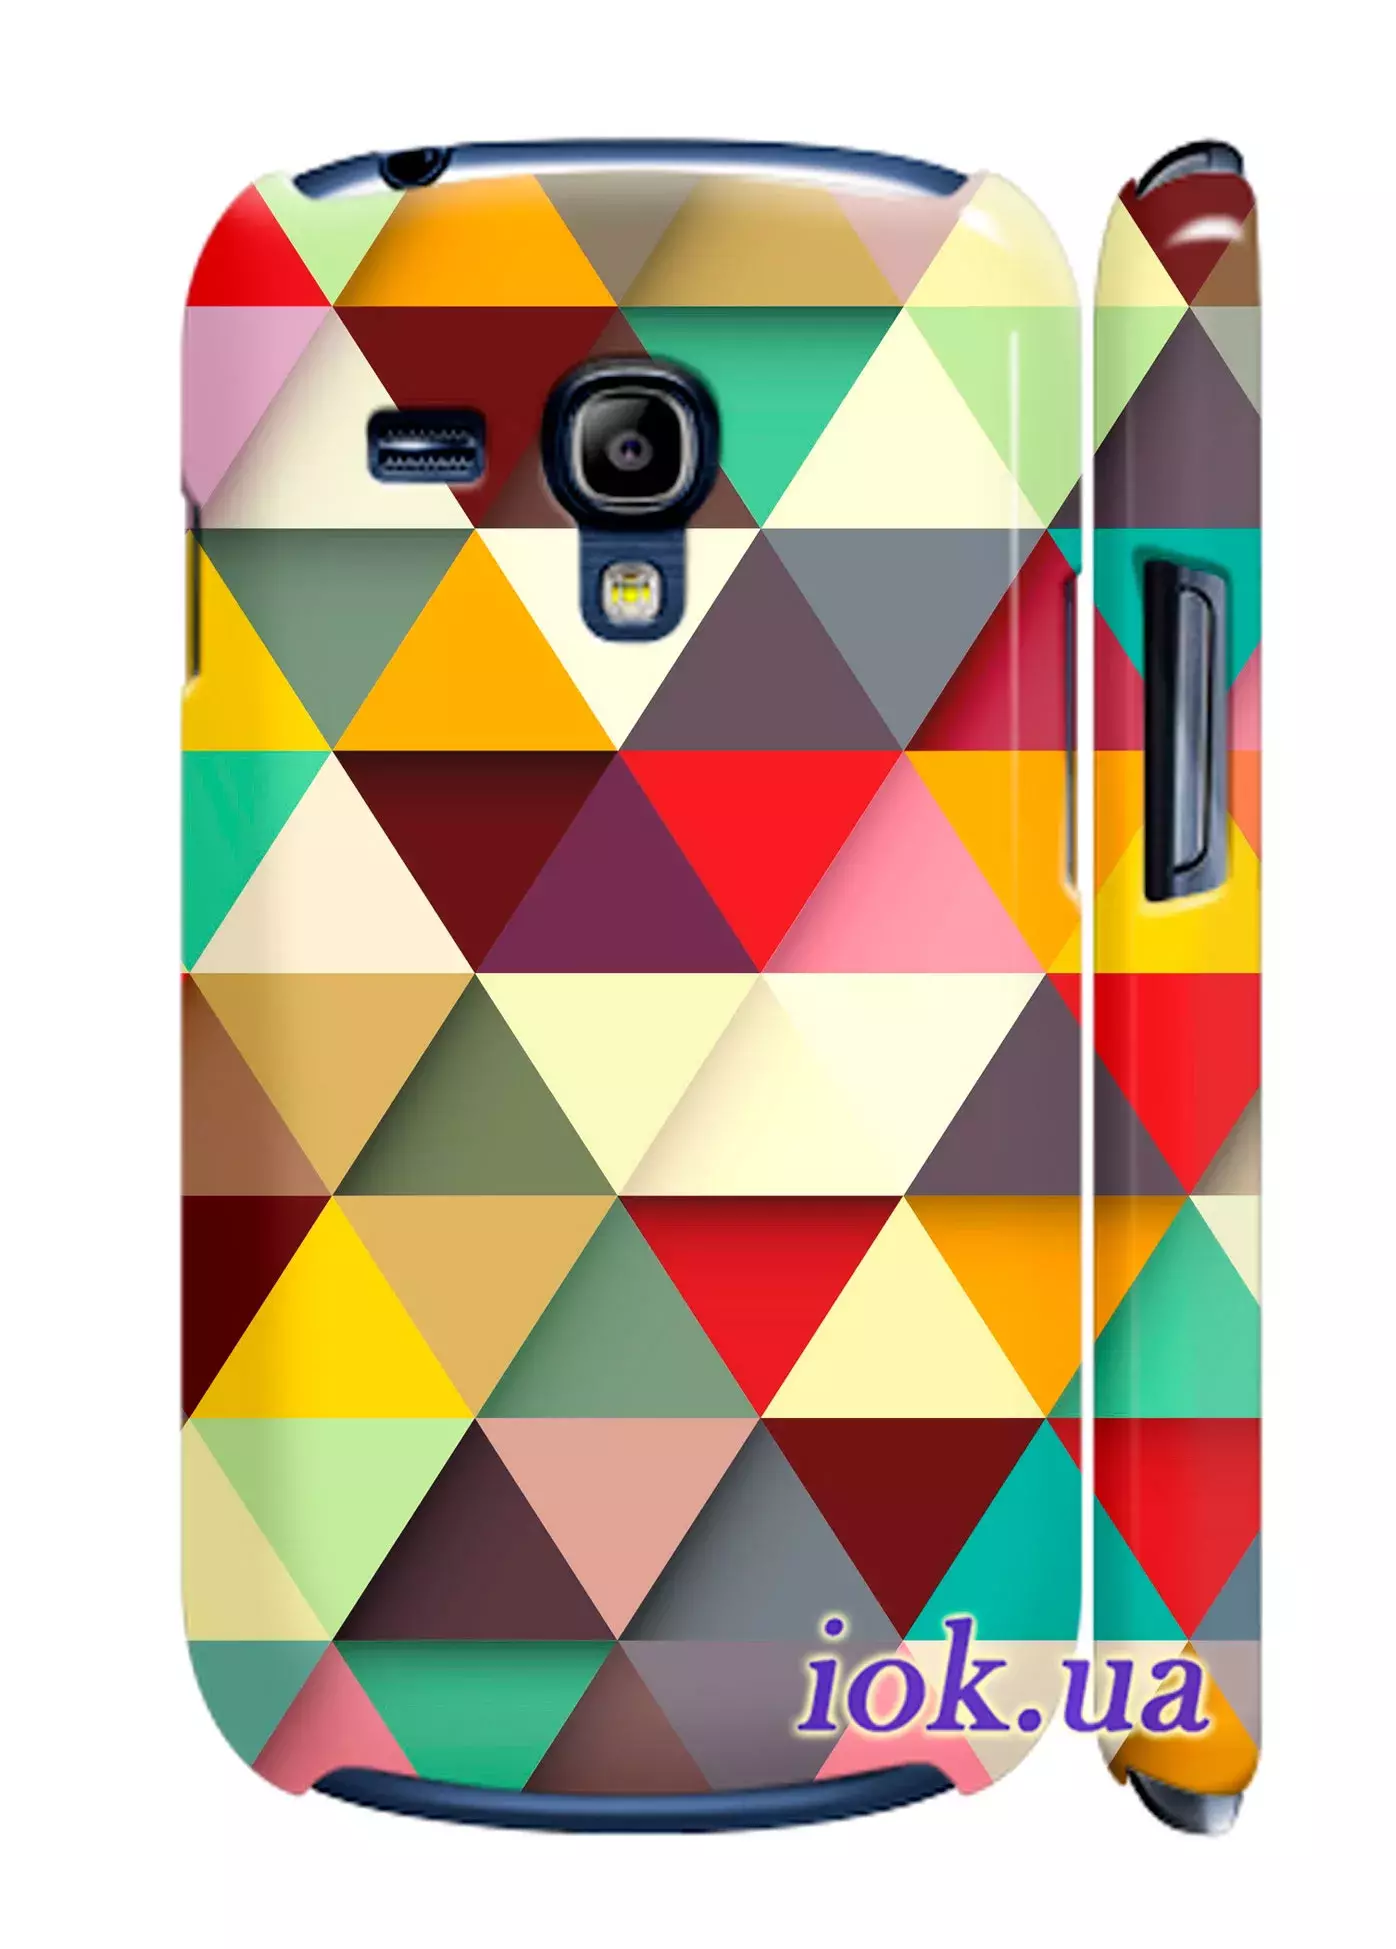 Чехол для Galaxy S3 Mini - Цветная мозайка